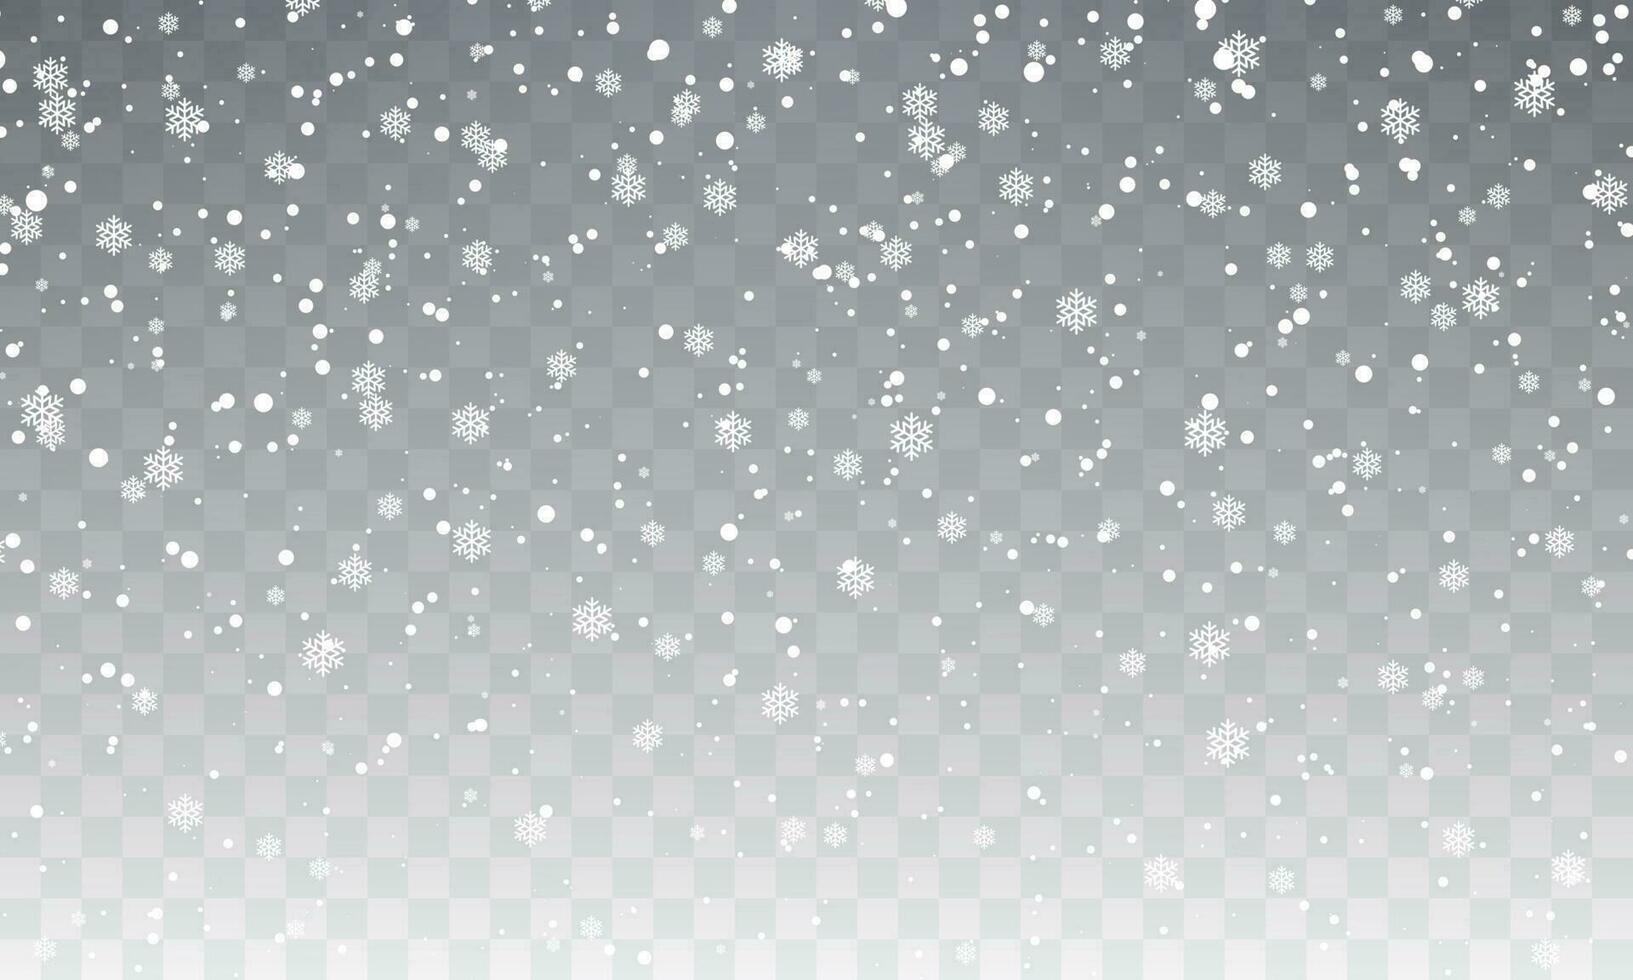 jul snö. faller snöflingor på mörk blå bakgrund. snöfall. vektor illustration